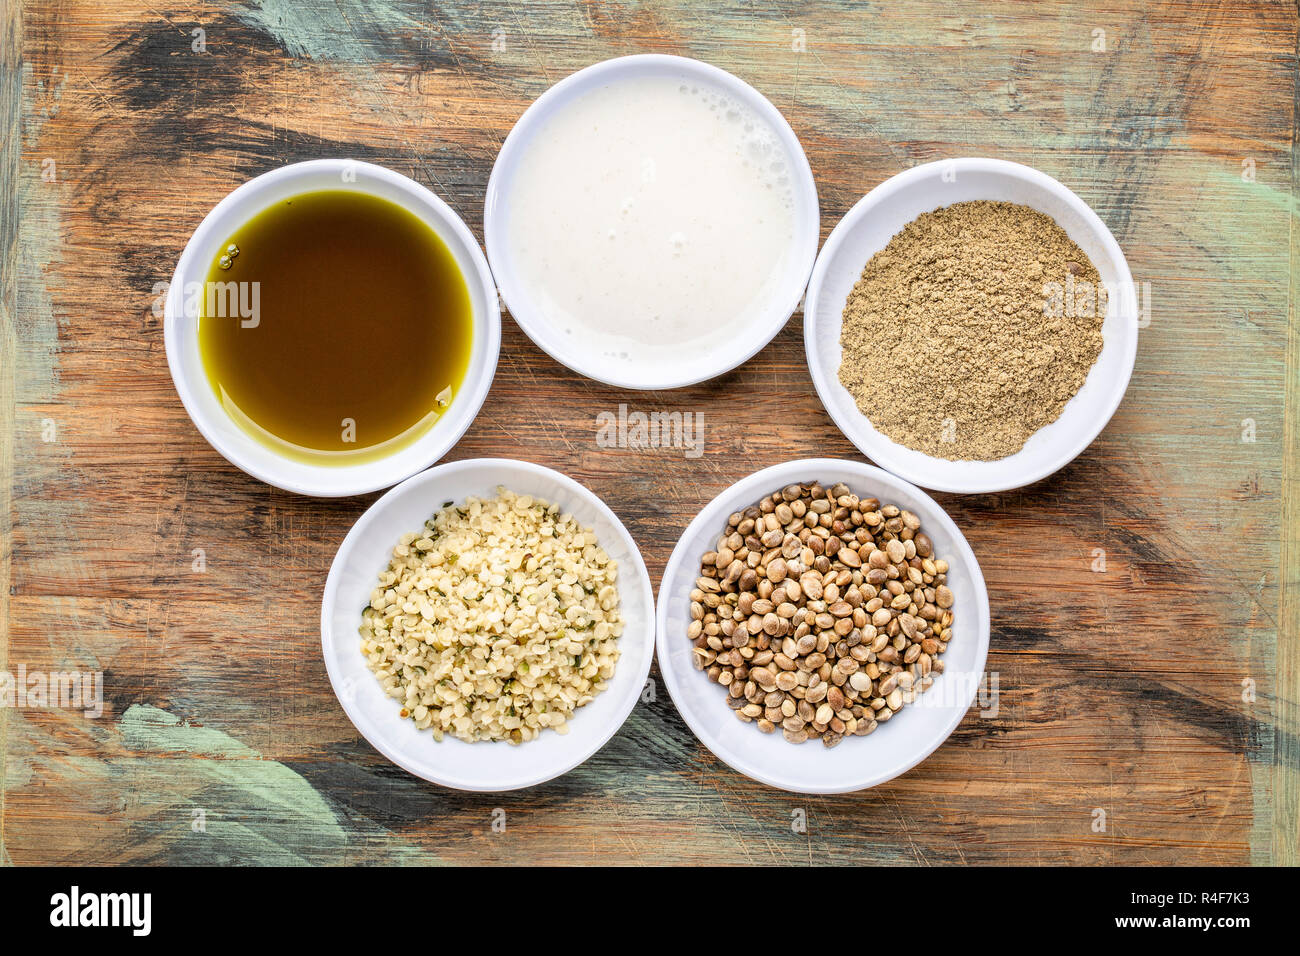 La raccolta di semi di canapa prodotto:s cuori, proteine in polvere, latte e olio in piccole ciotole bianco contro legno grunge Foto Stock